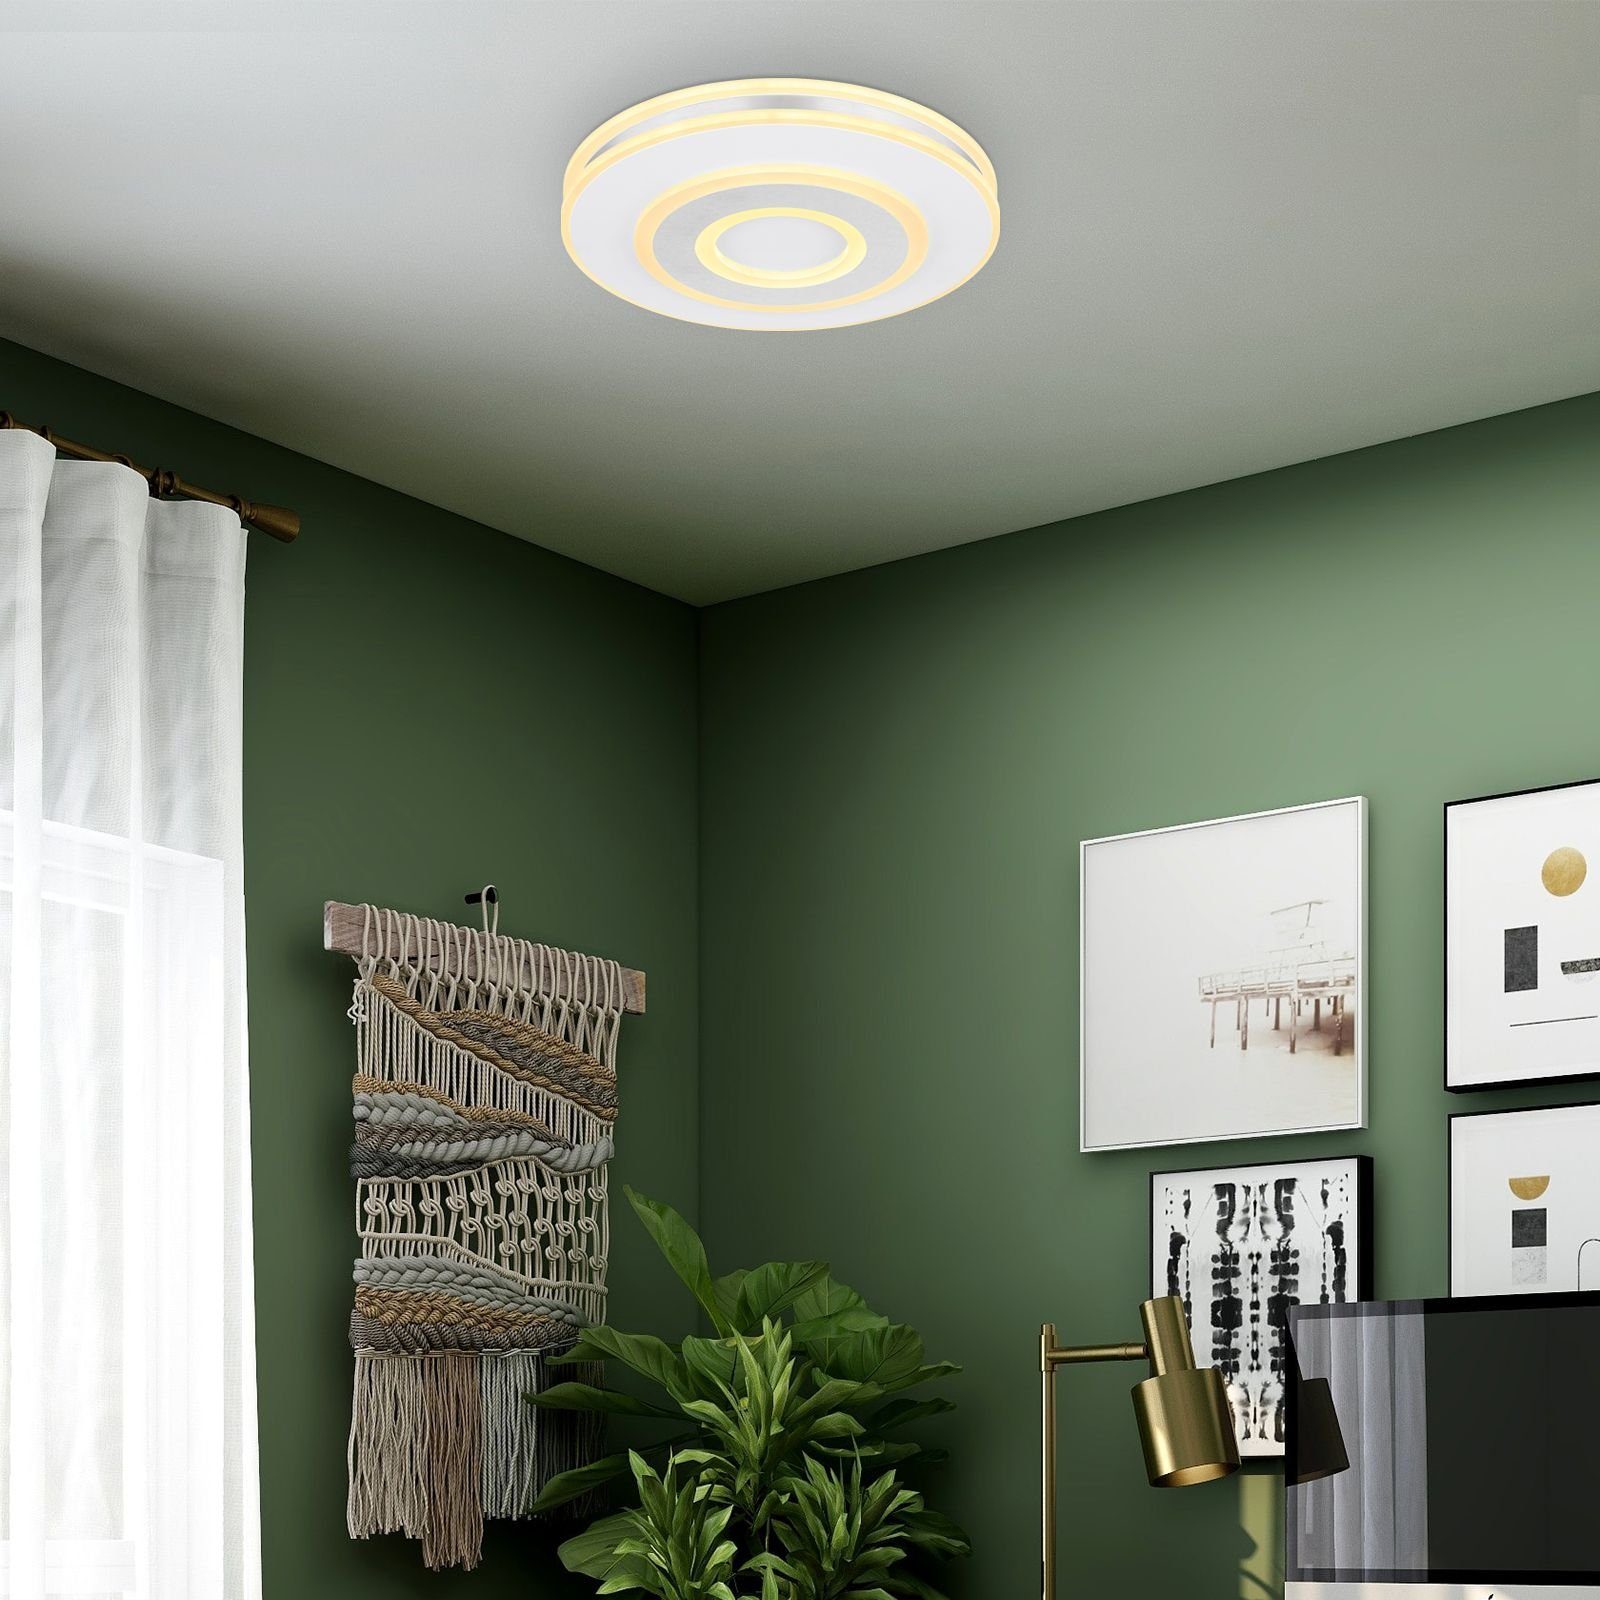 GLOBO Deckenleuchte Deckenleuchte Fernbedienung Globo Deckenlampe Dimmbar Wohnzimmer LED